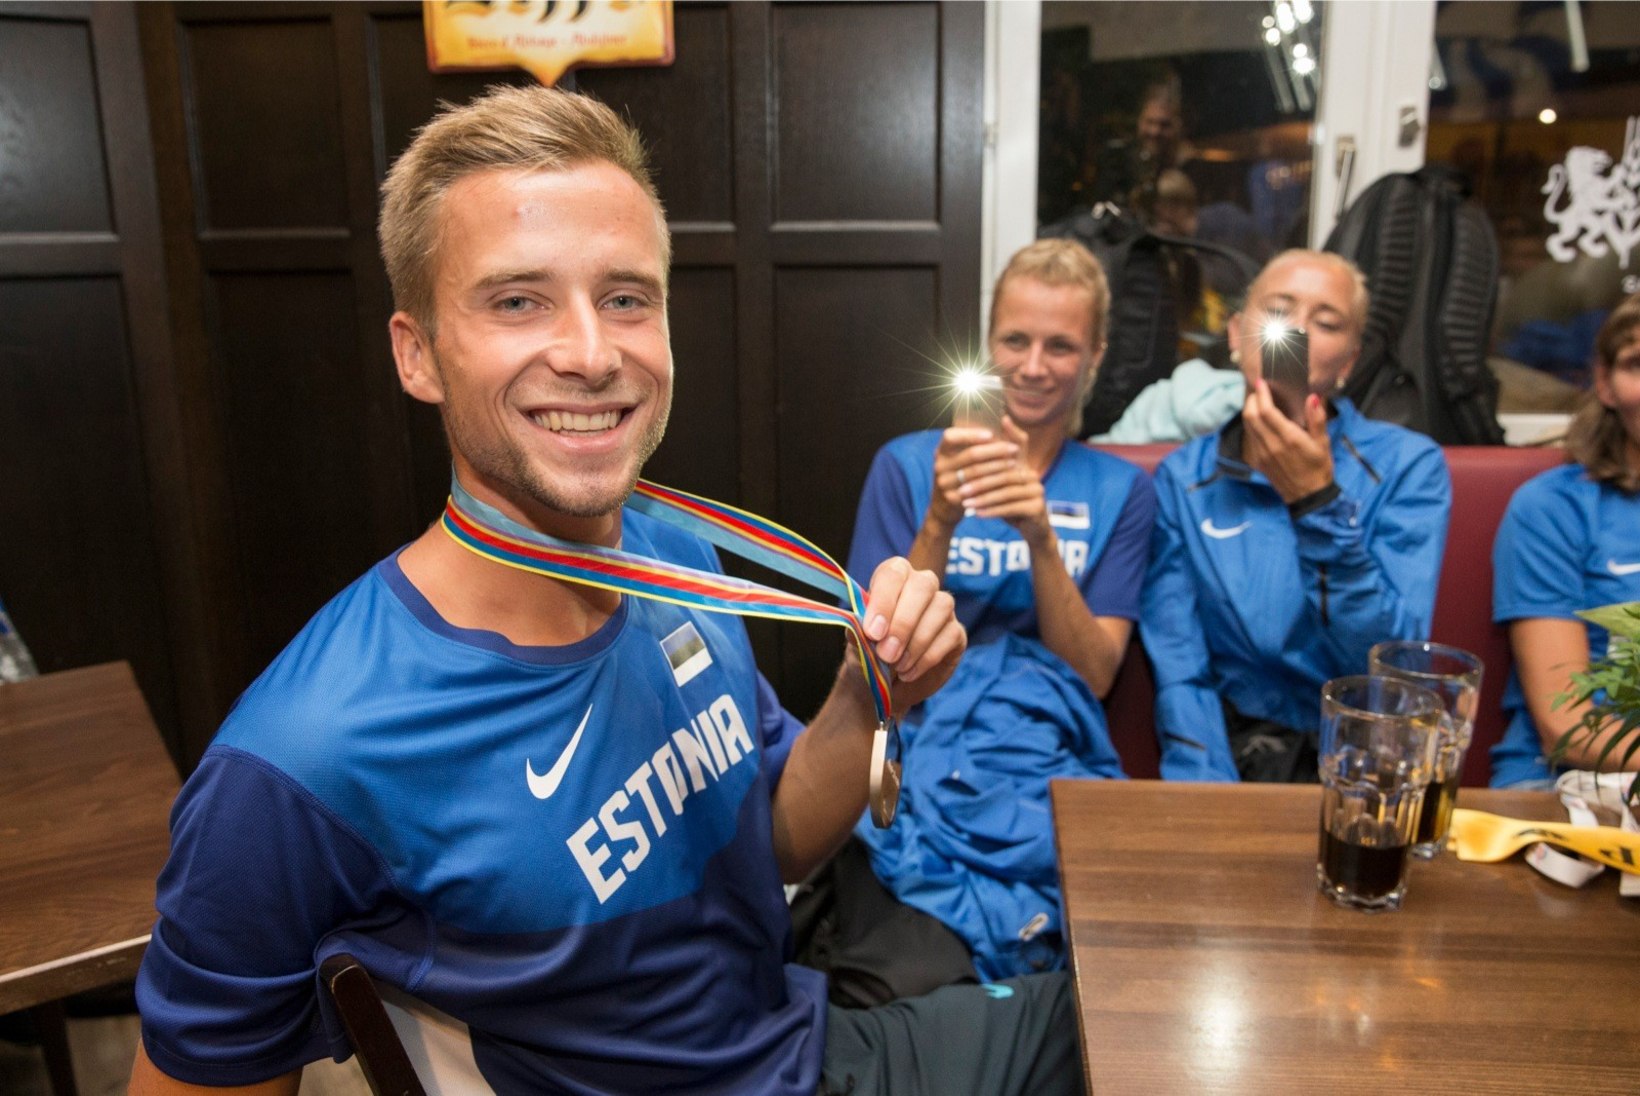 GALERII | PALJU ÕNNE! Eesti säravaim spordimees Rasmus Mägi tähistab 25. sünnipäeva